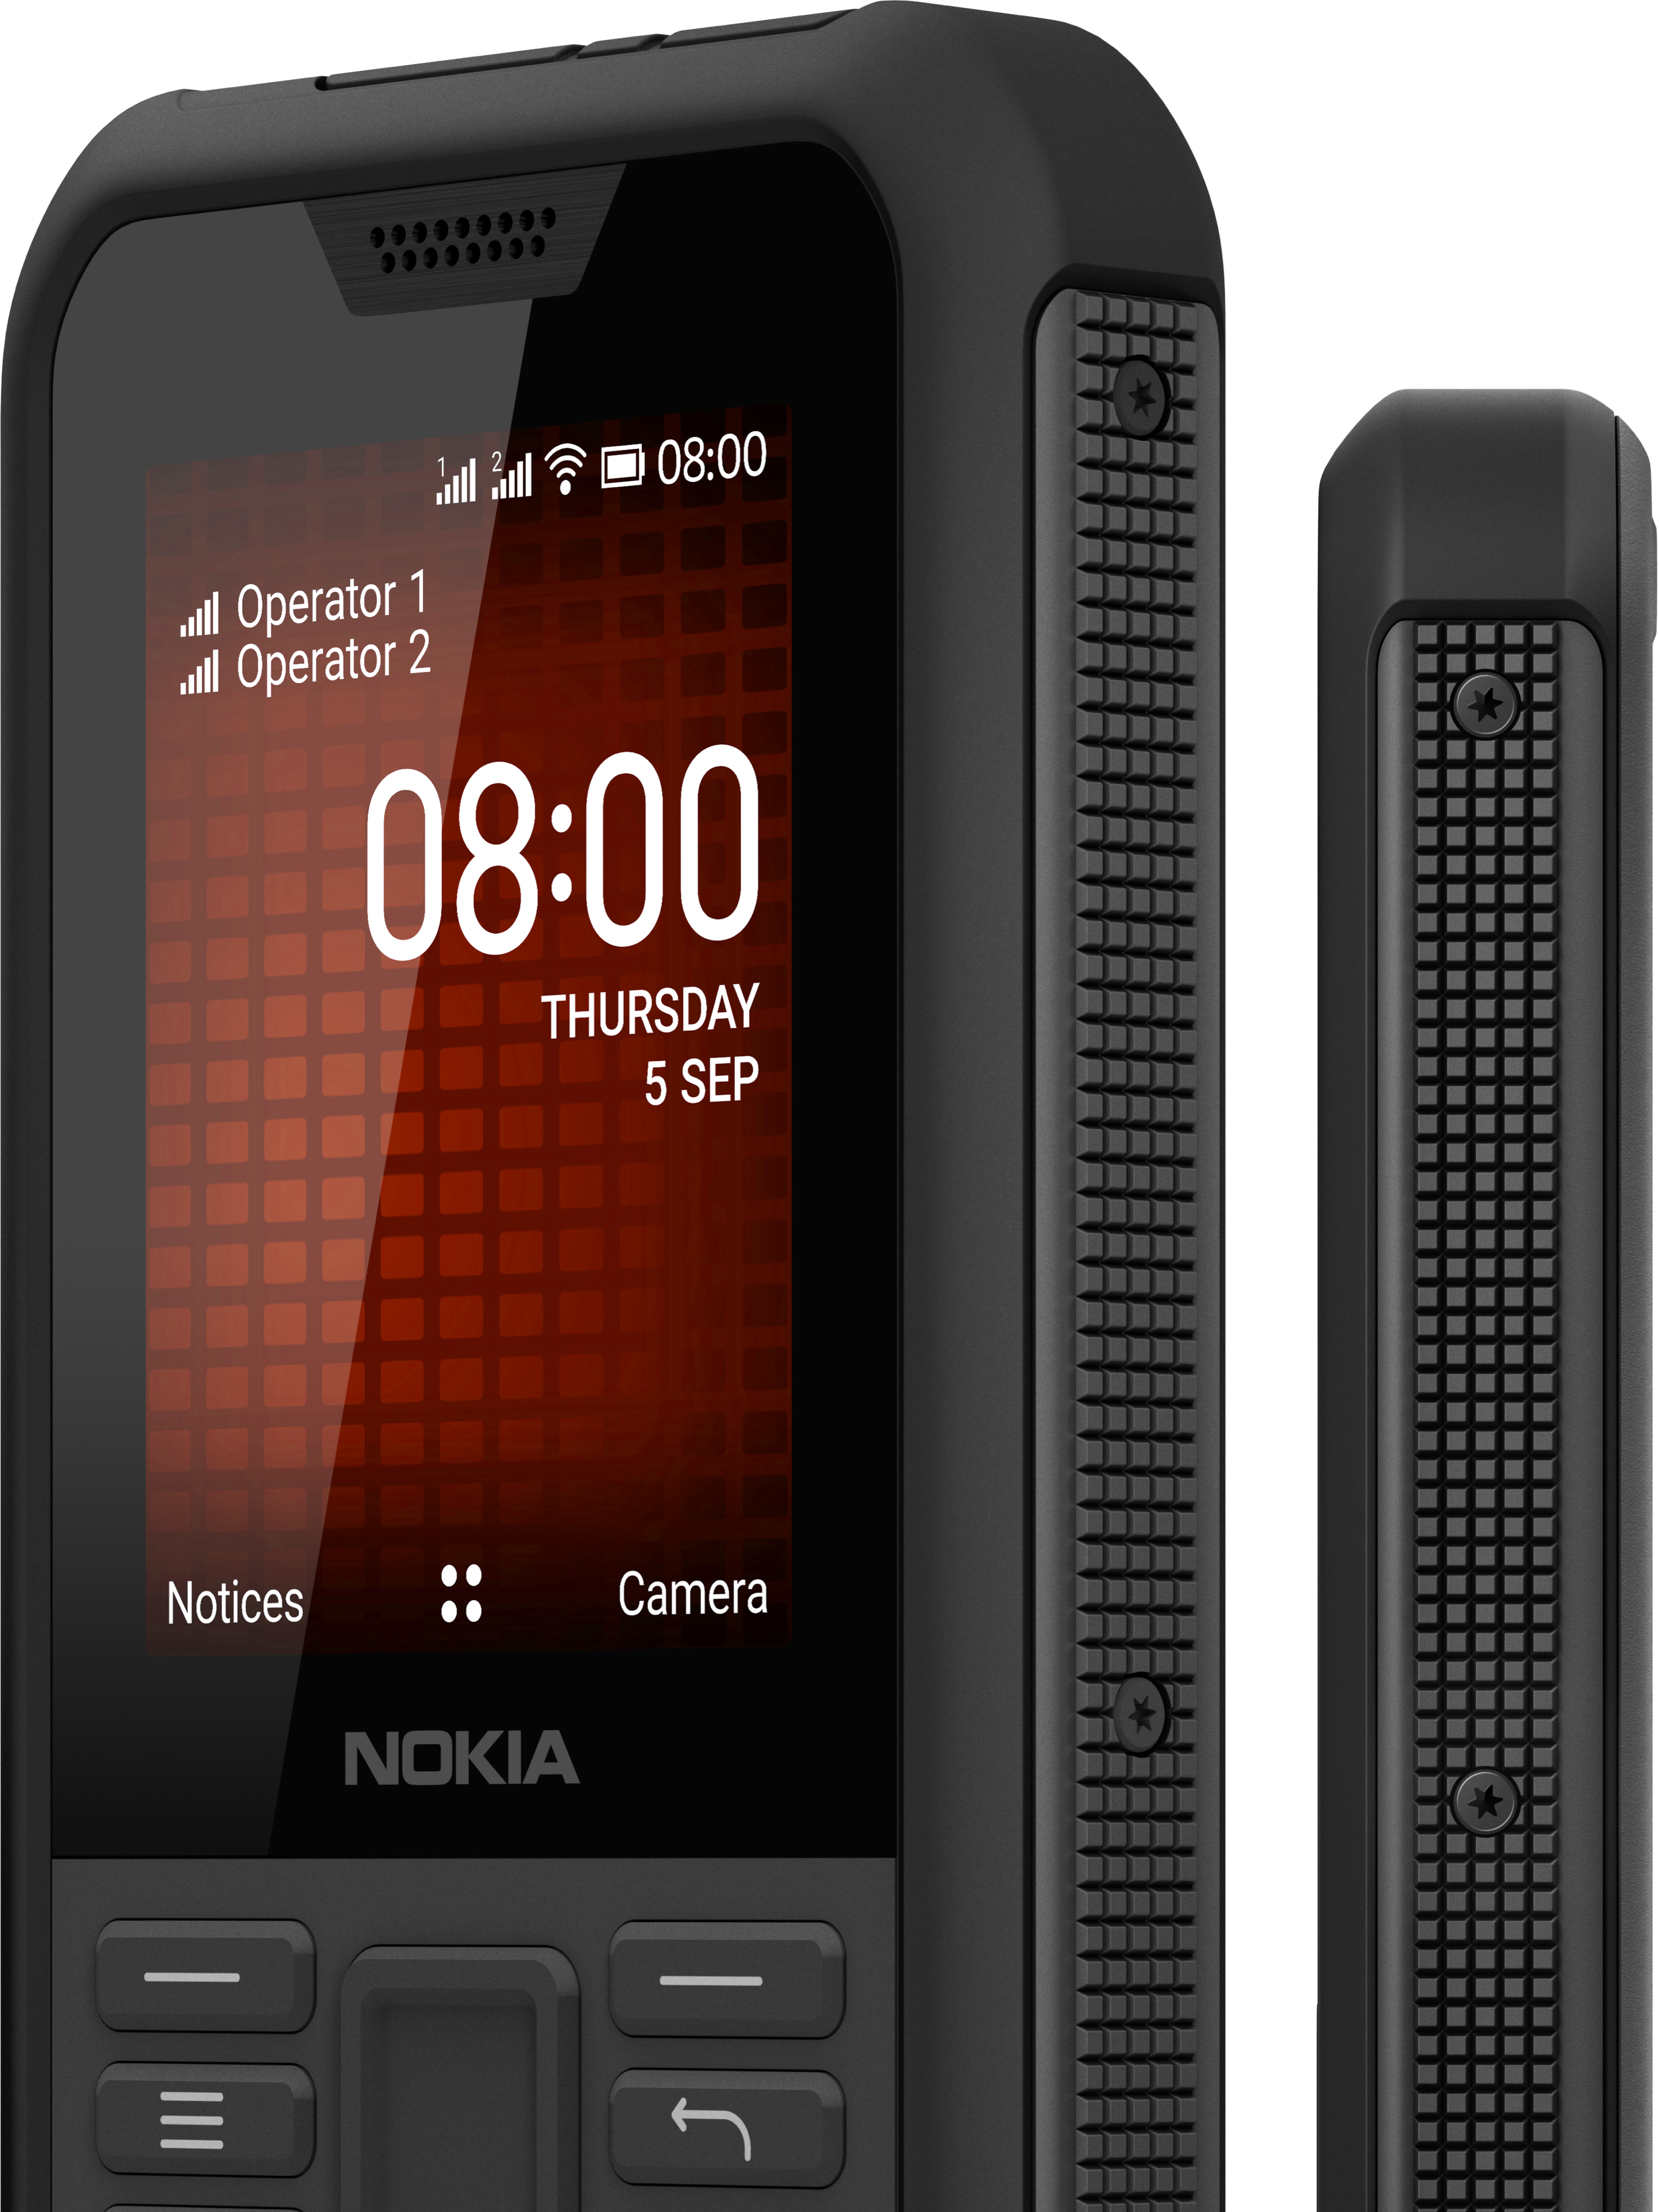 Nokia 800 Tough Phone - Cool Material